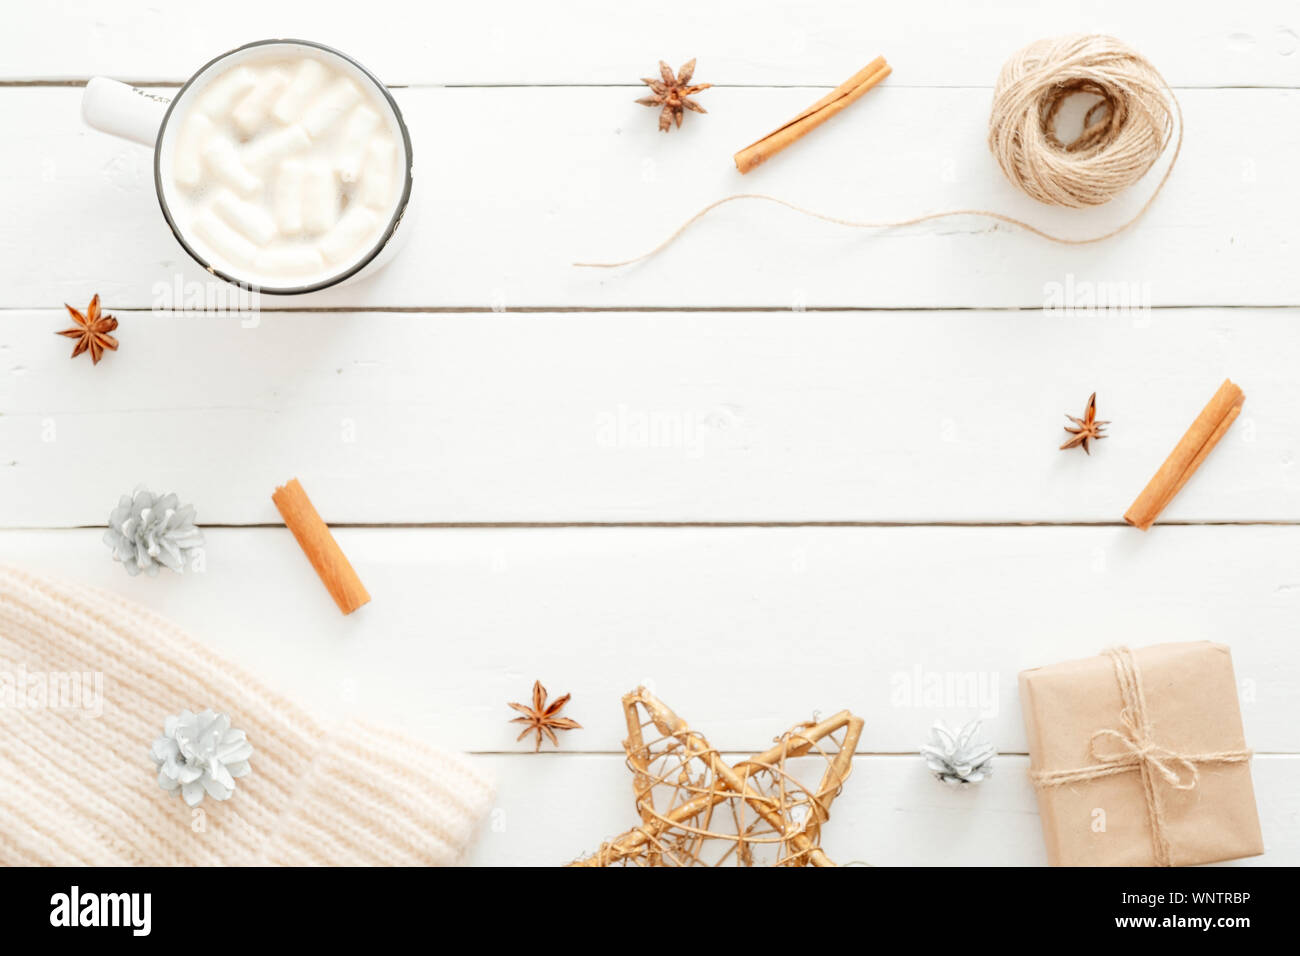 Natale composizione minima. Flatlay tazza di cioccolata calda con marshmallow, bastoncini di cannella, decorazioni di Natale, confezione regalo avvolto in carta kraft, lavorati a maglia Foto Stock